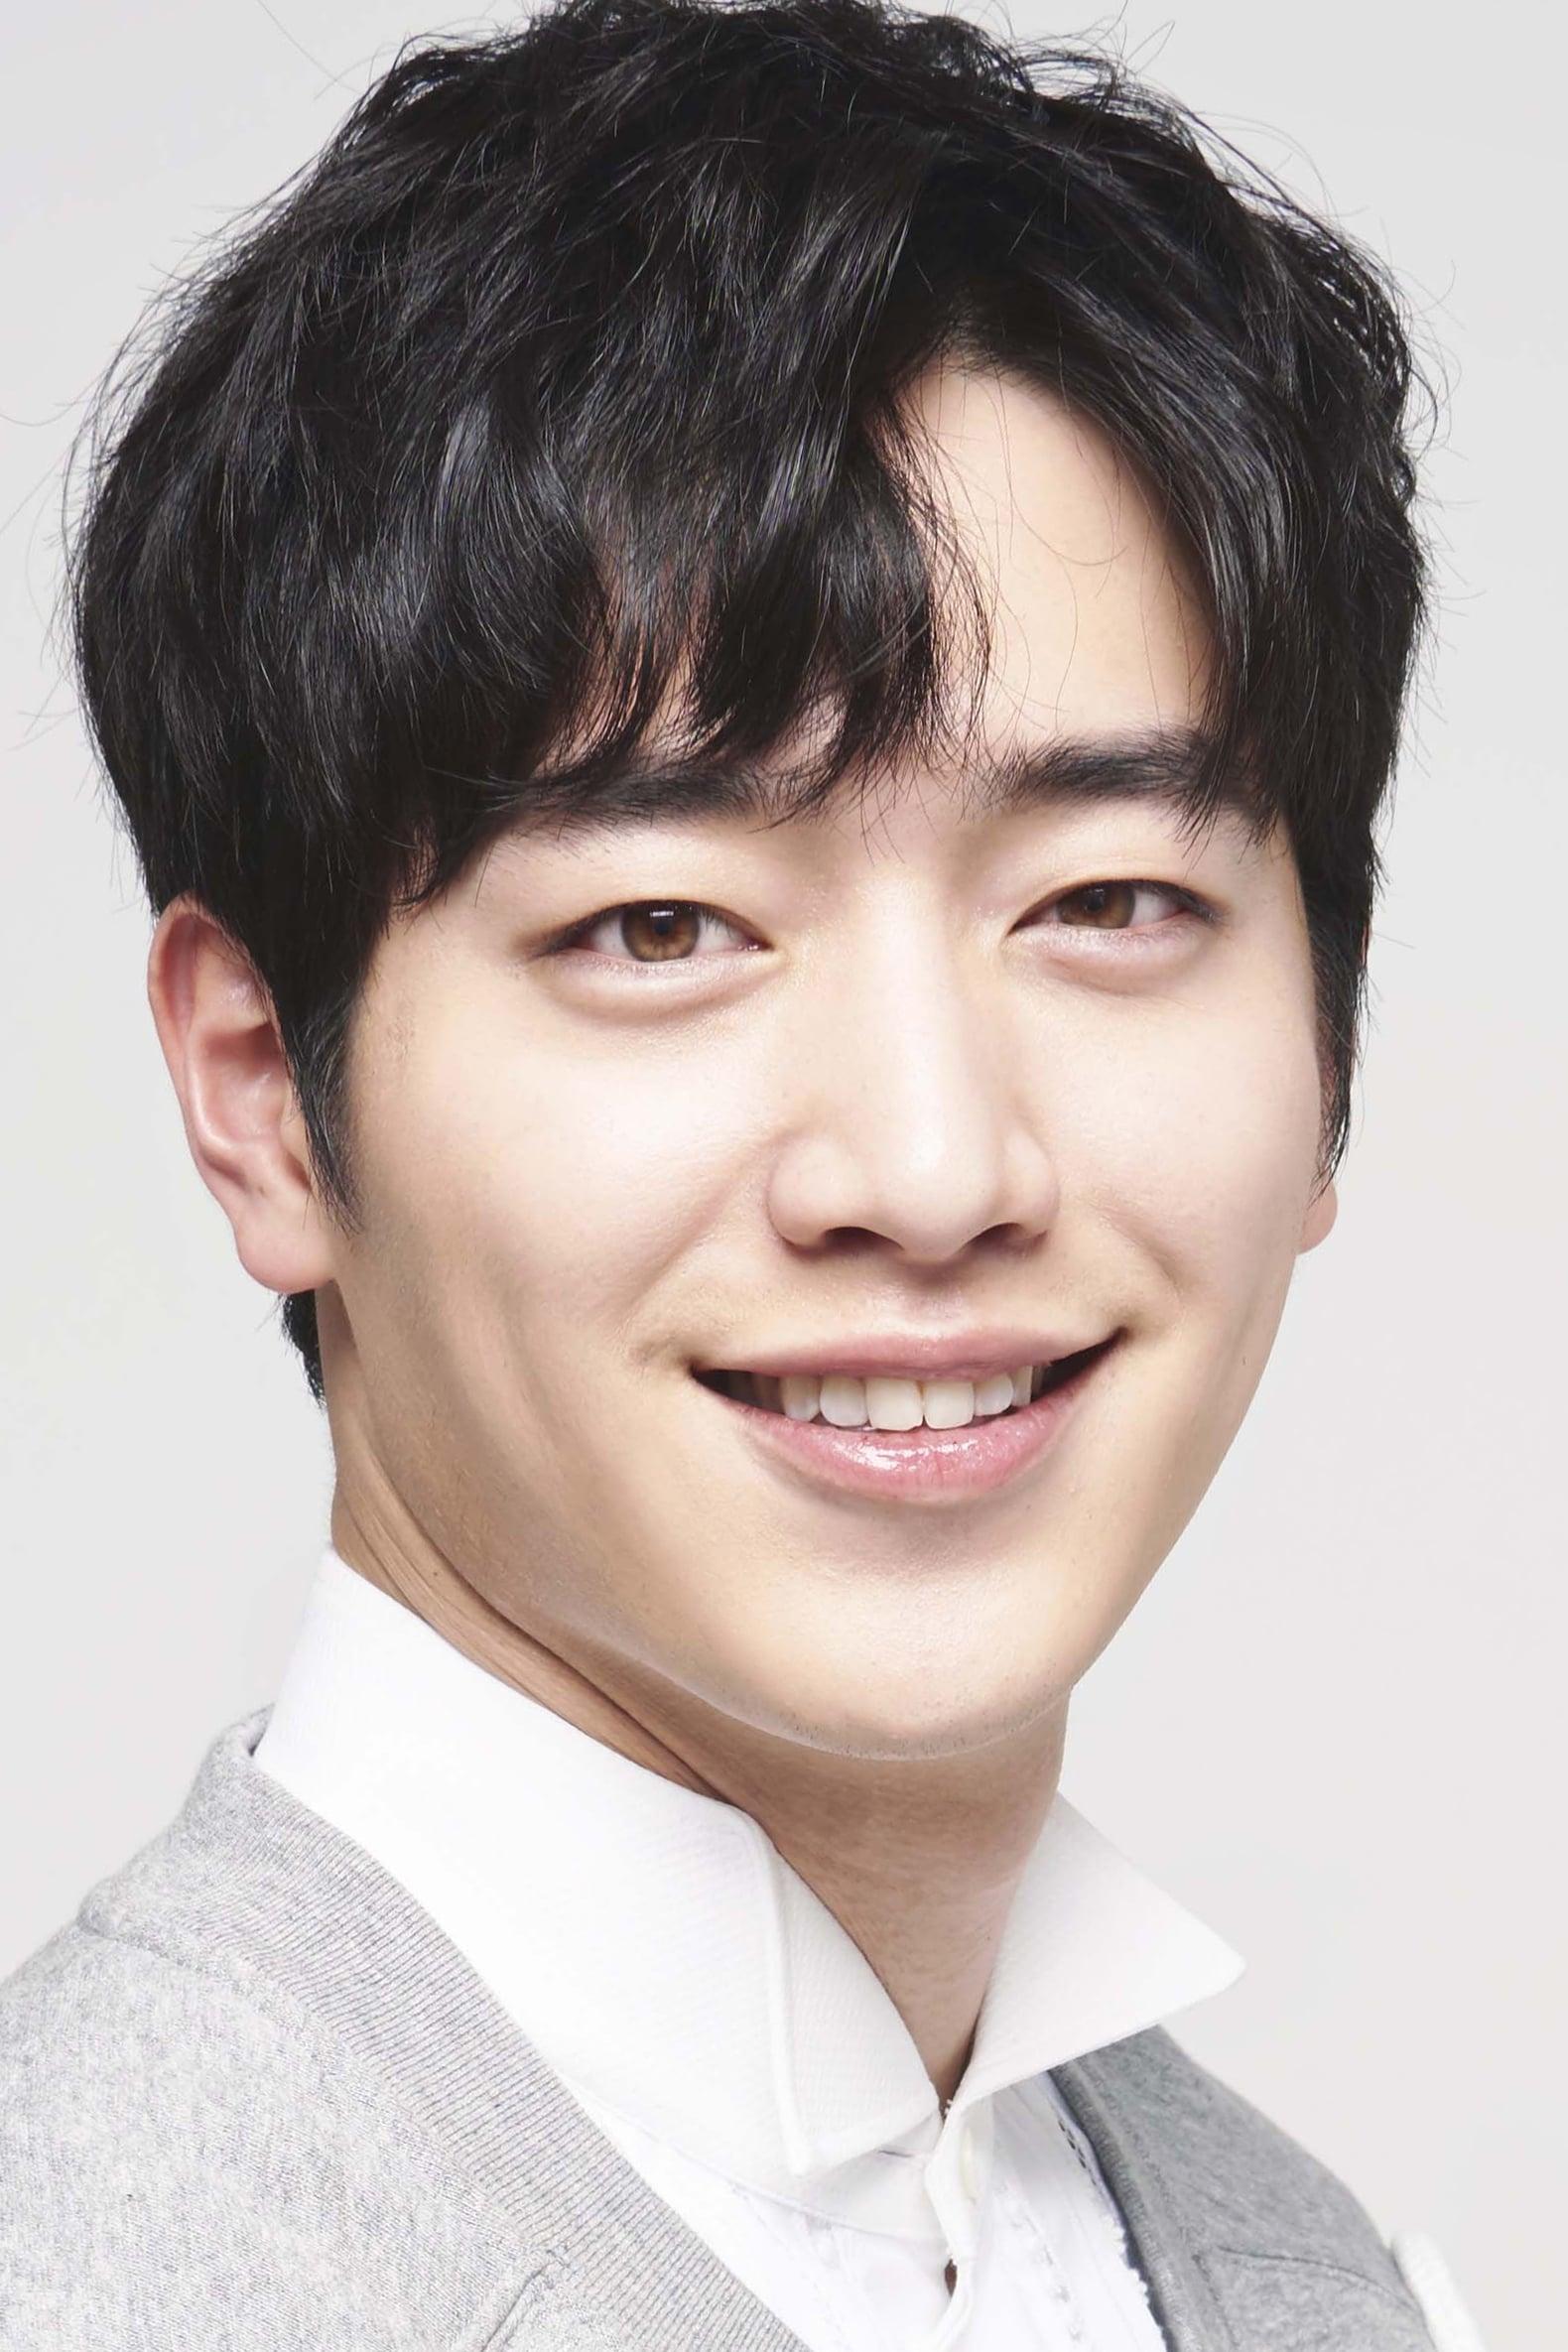 Seo Kang Joon Image